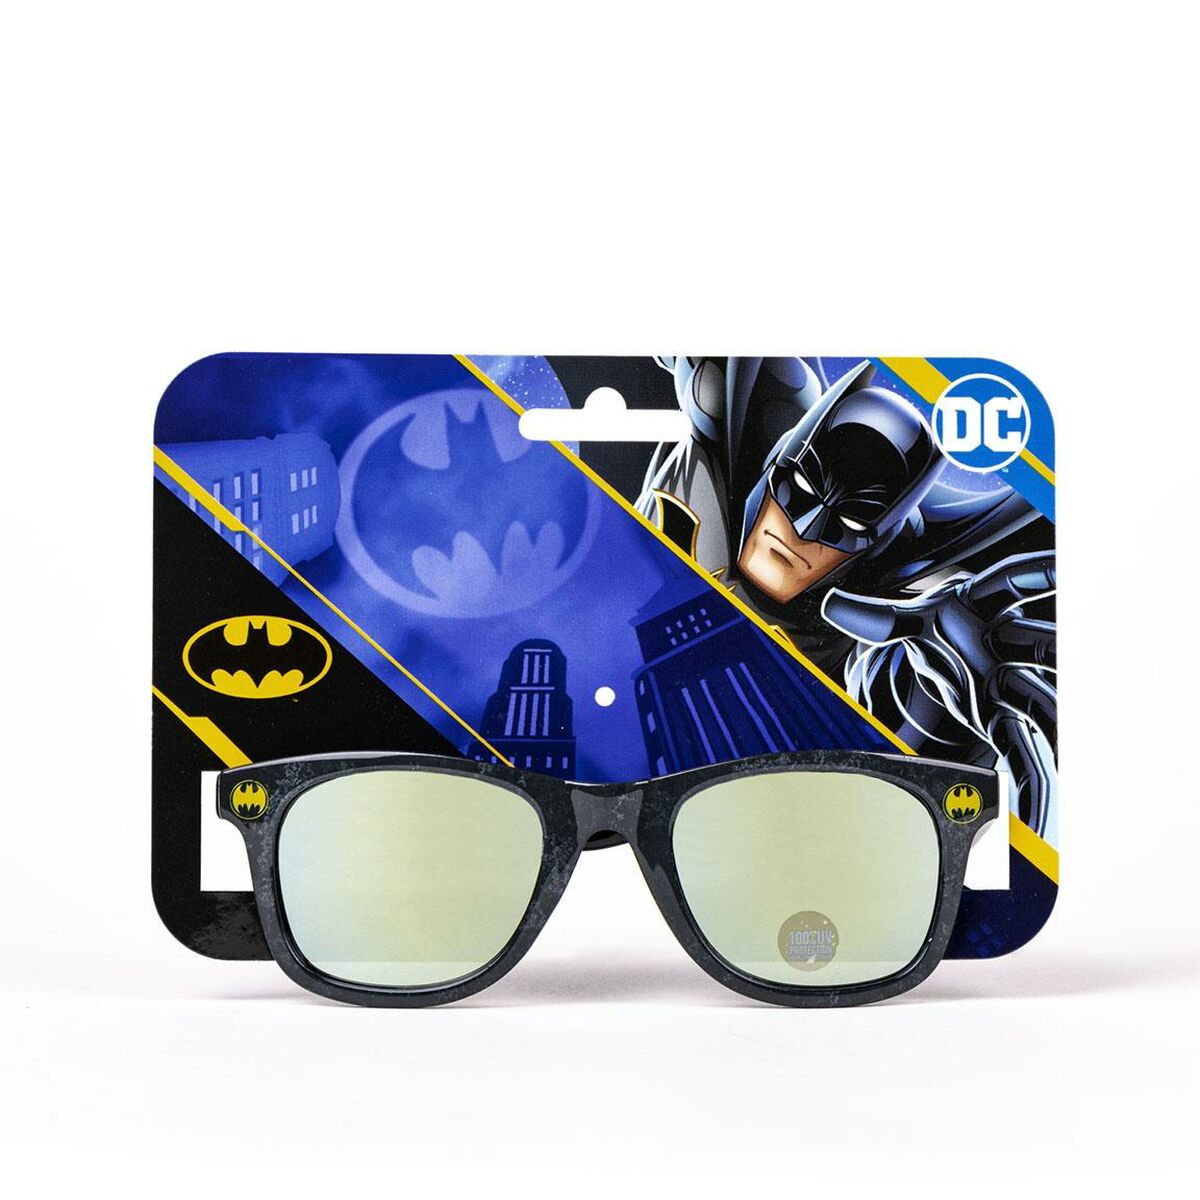 Kindersonnenbrille Batman Schwarz